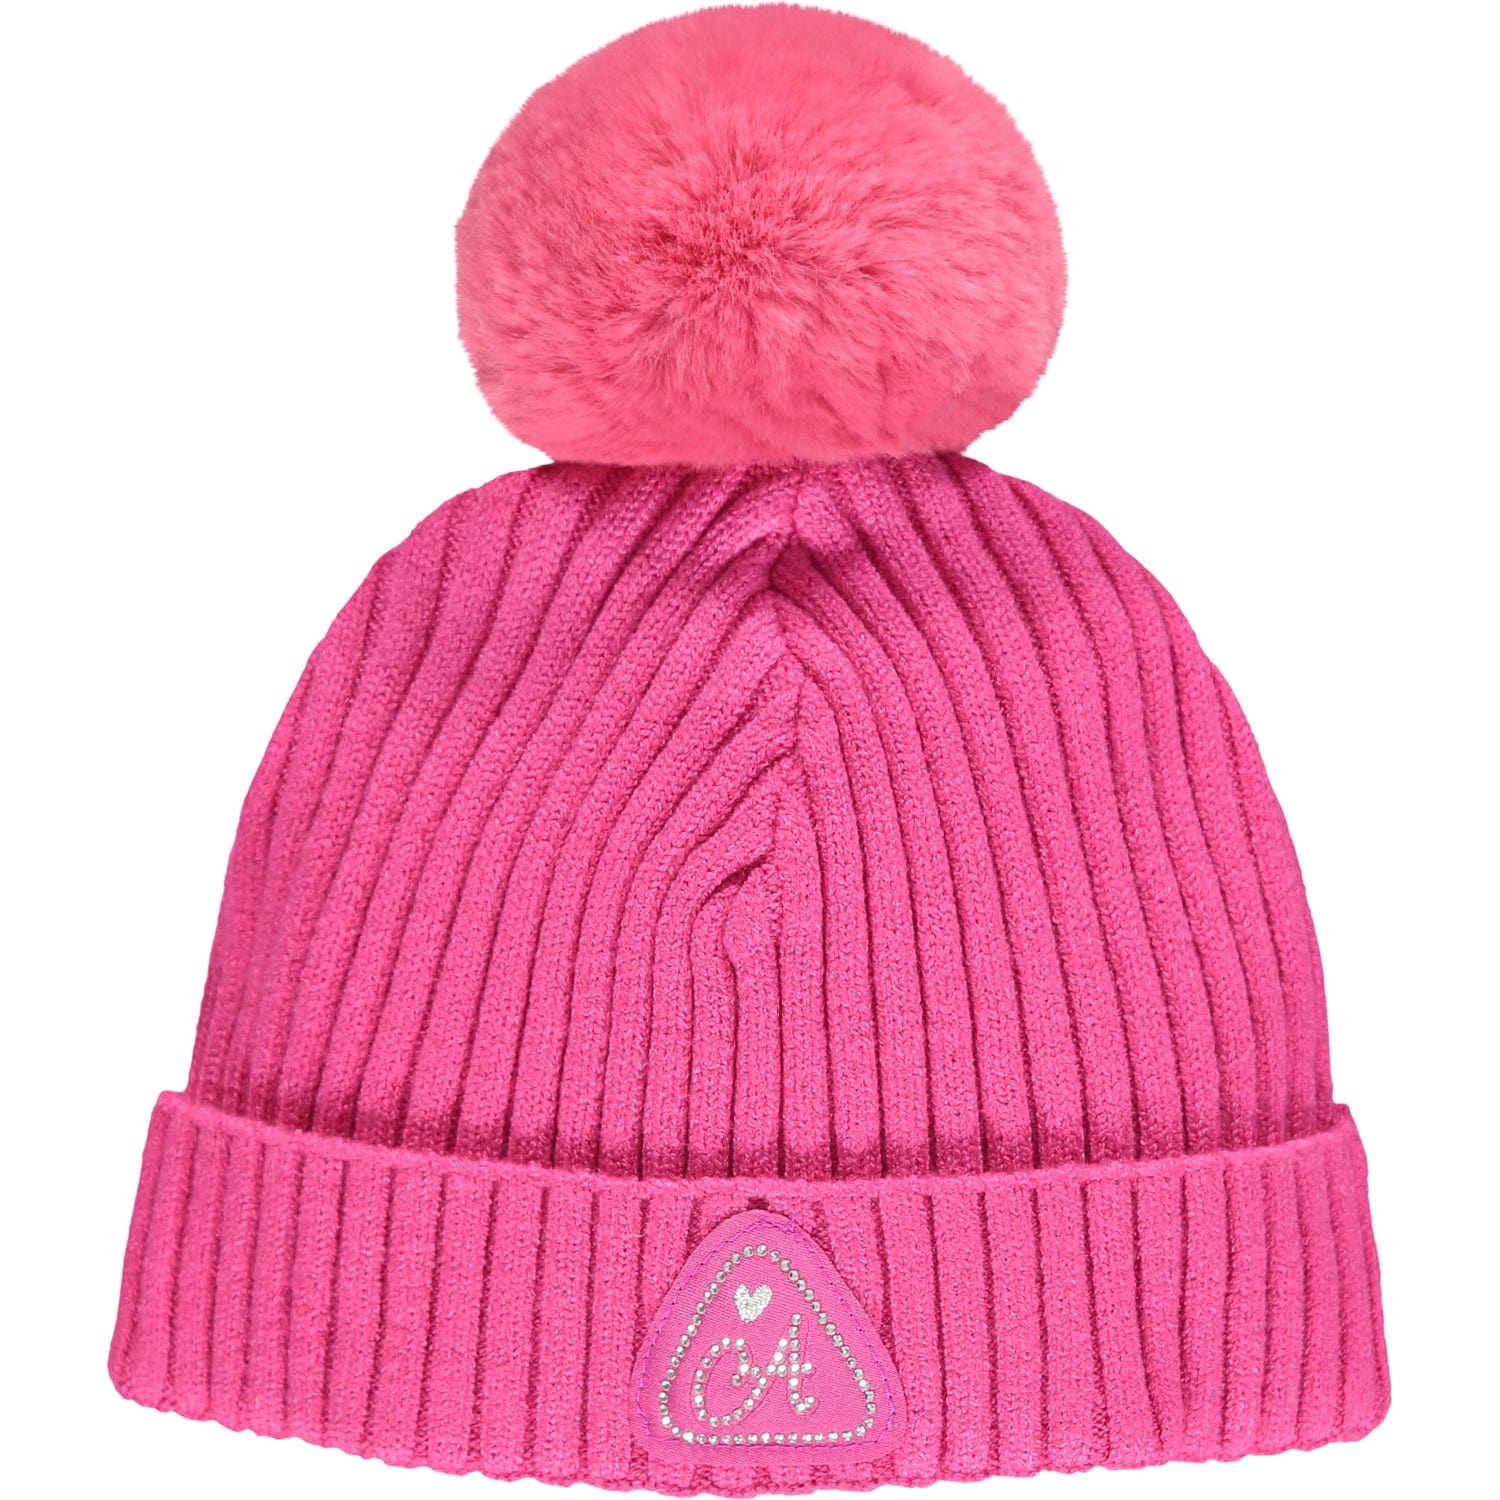 A DEE - Sadie Knitted Pom Pom Hat - Pink Glaze